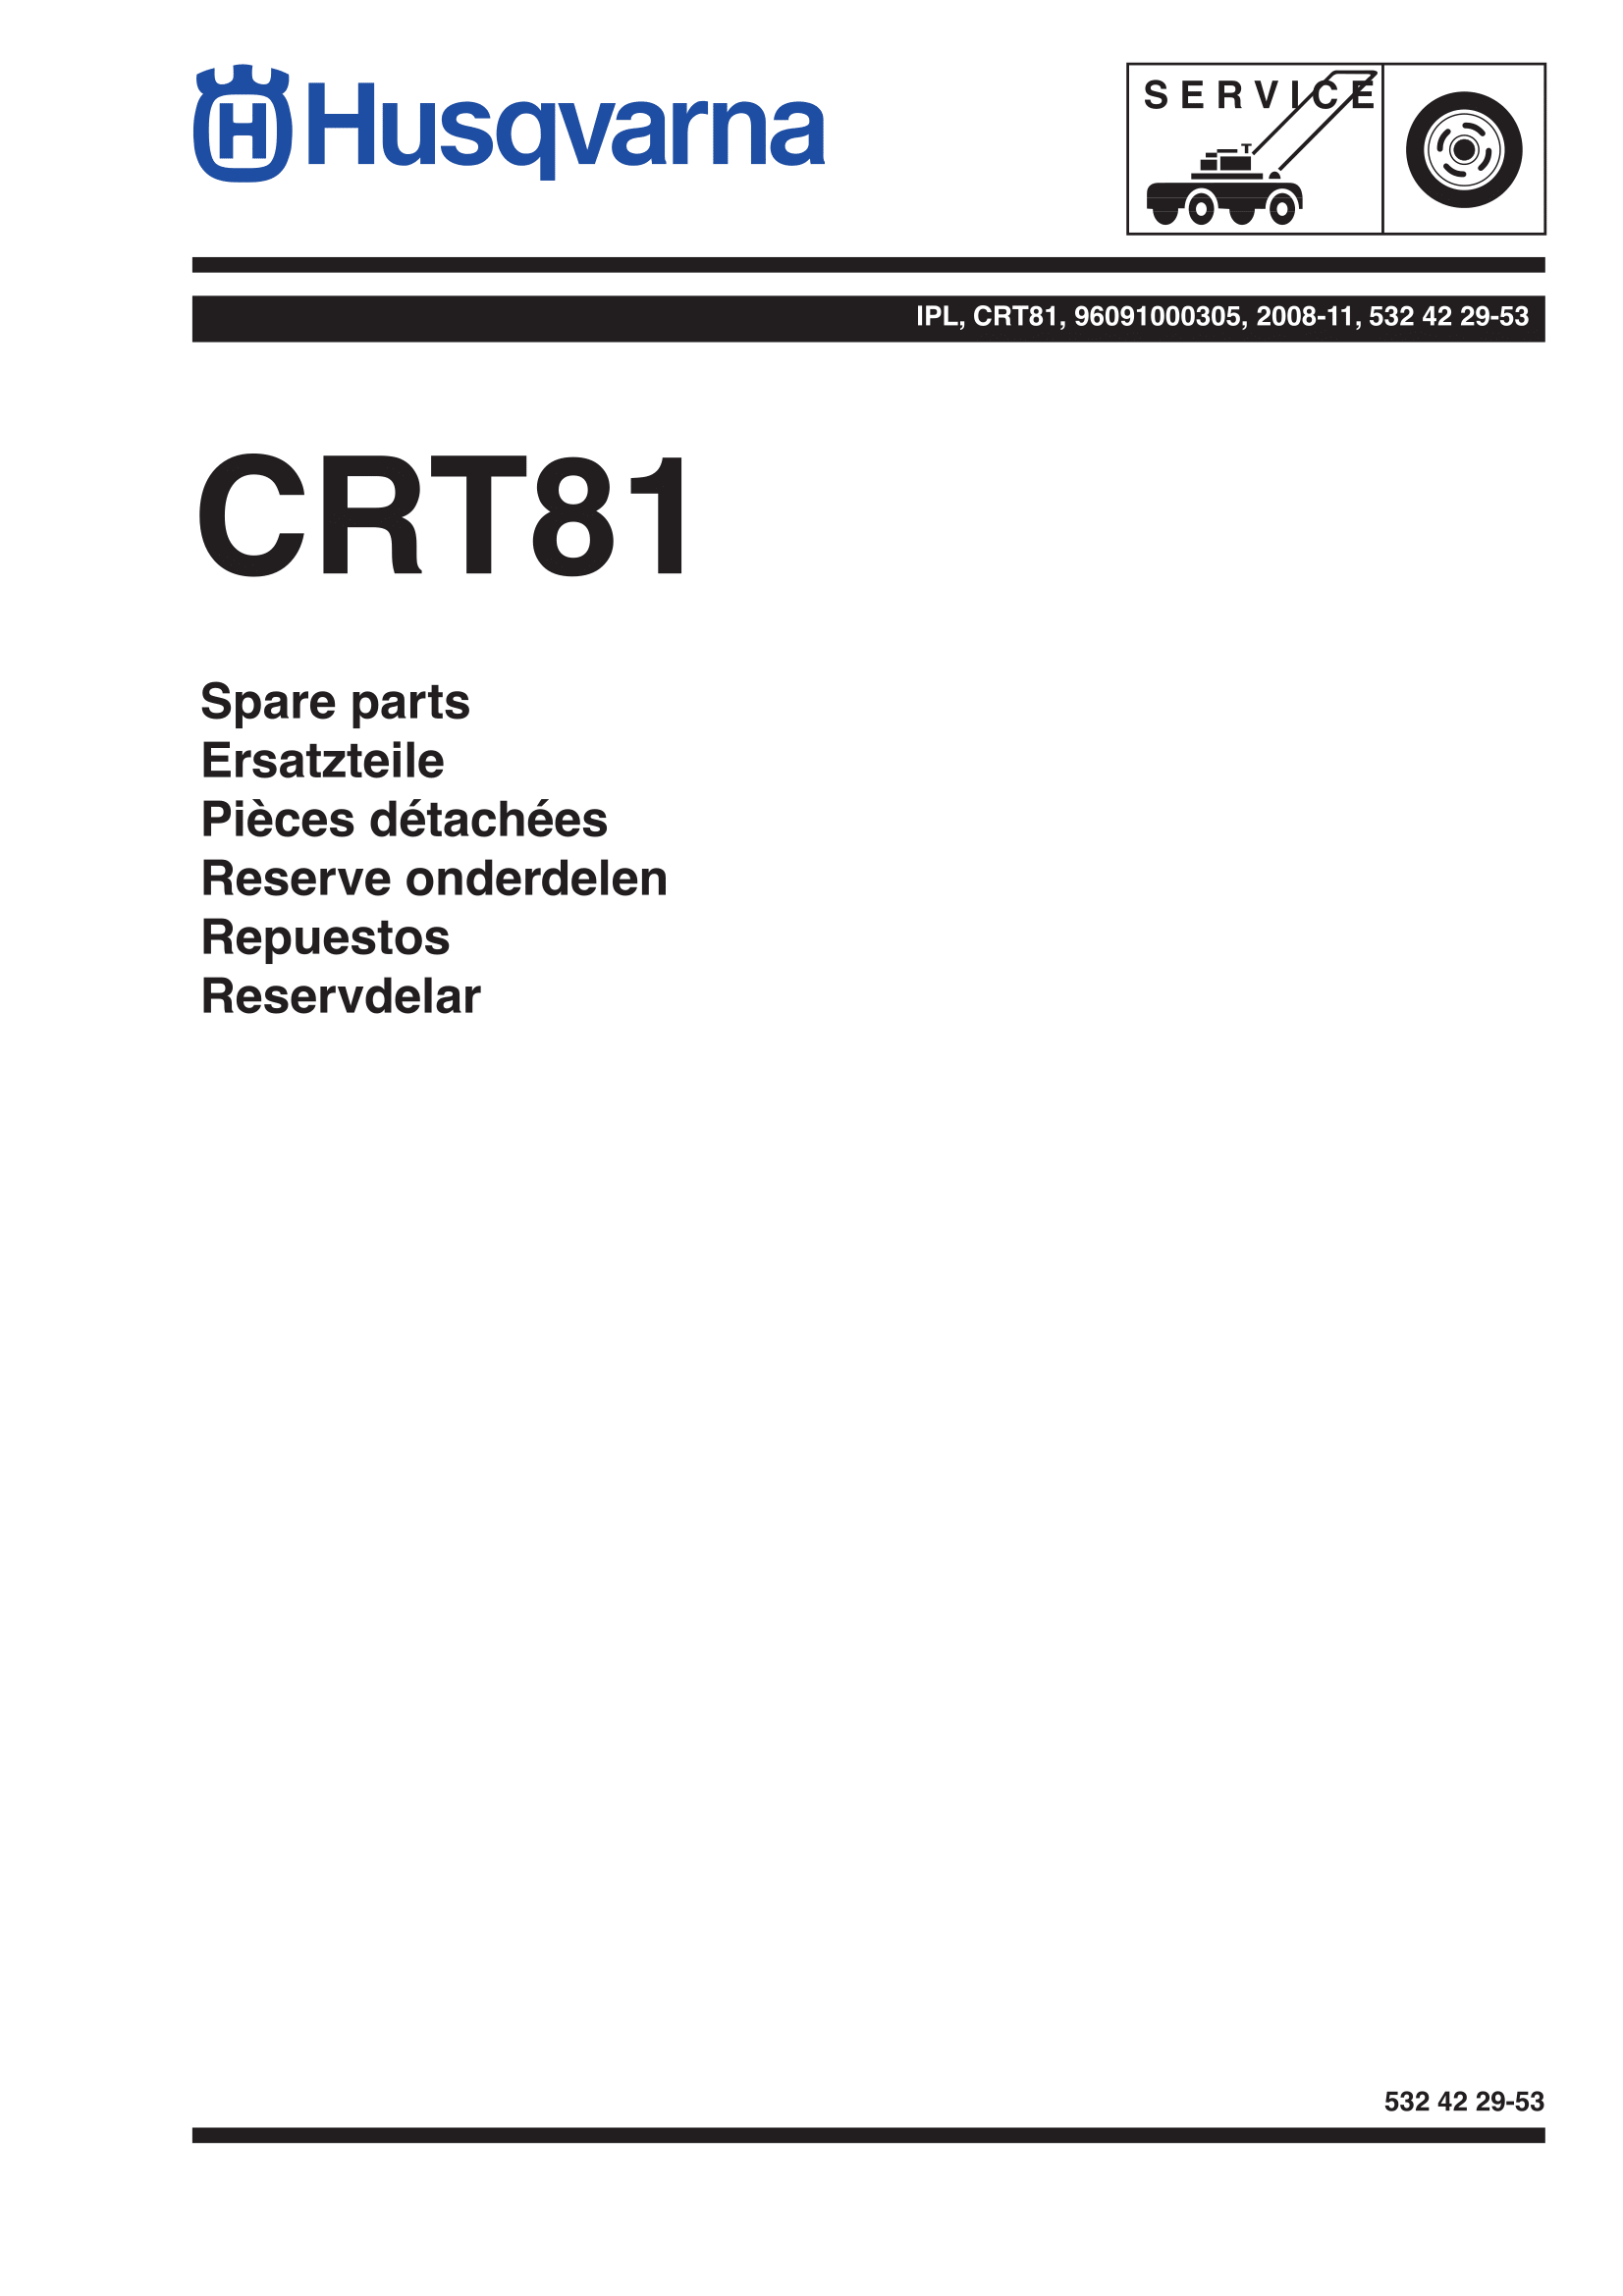 Культиватор CRT81 (2008-11)